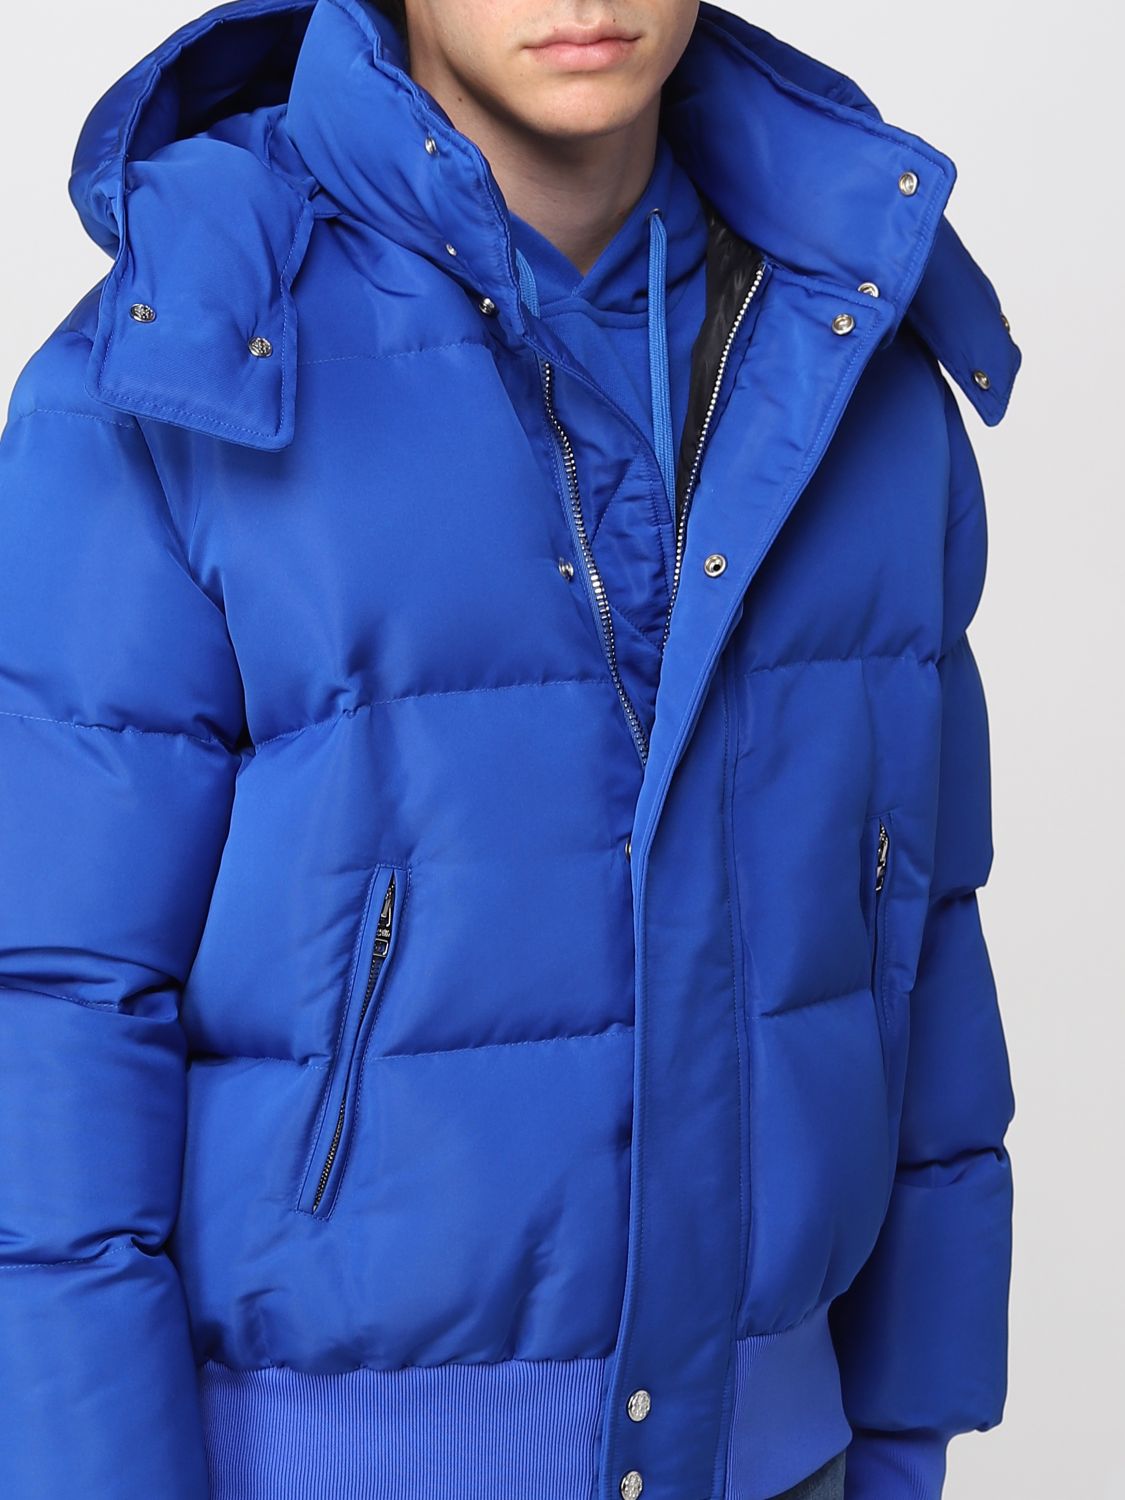 オンライン販促品  ブルー ジャケット アレキサンダーマックイーン テーラードジャケット